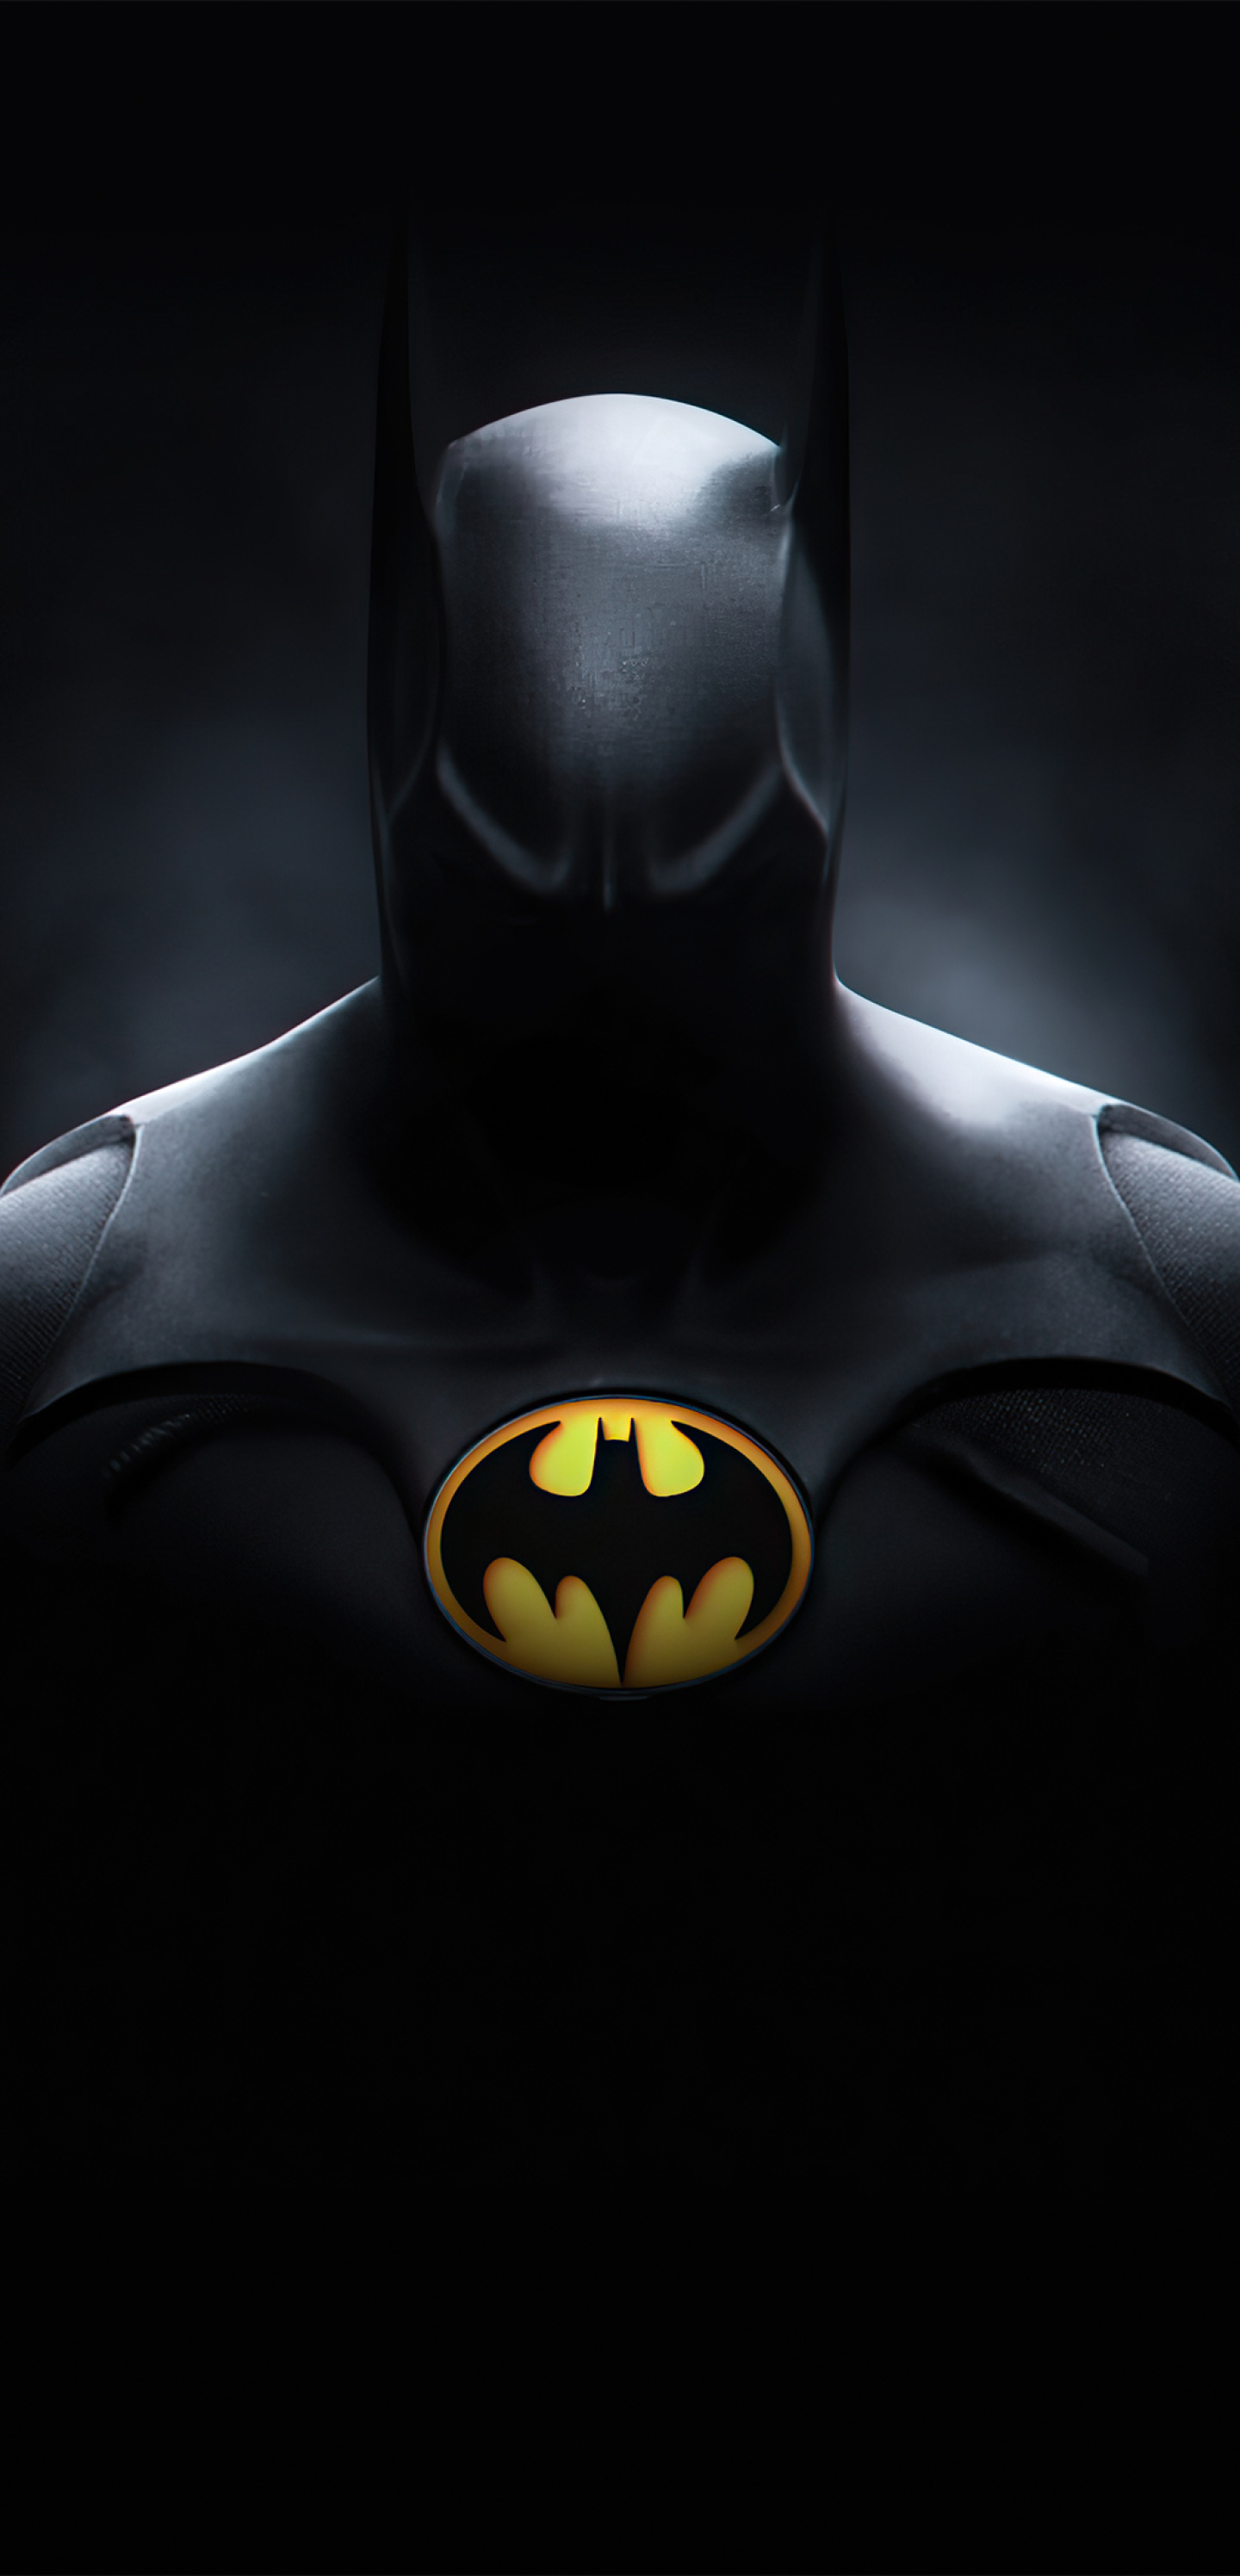 1440x2992 Batman Michael Keaton 4k 1440x2992 Resolution Wallpaper Hd